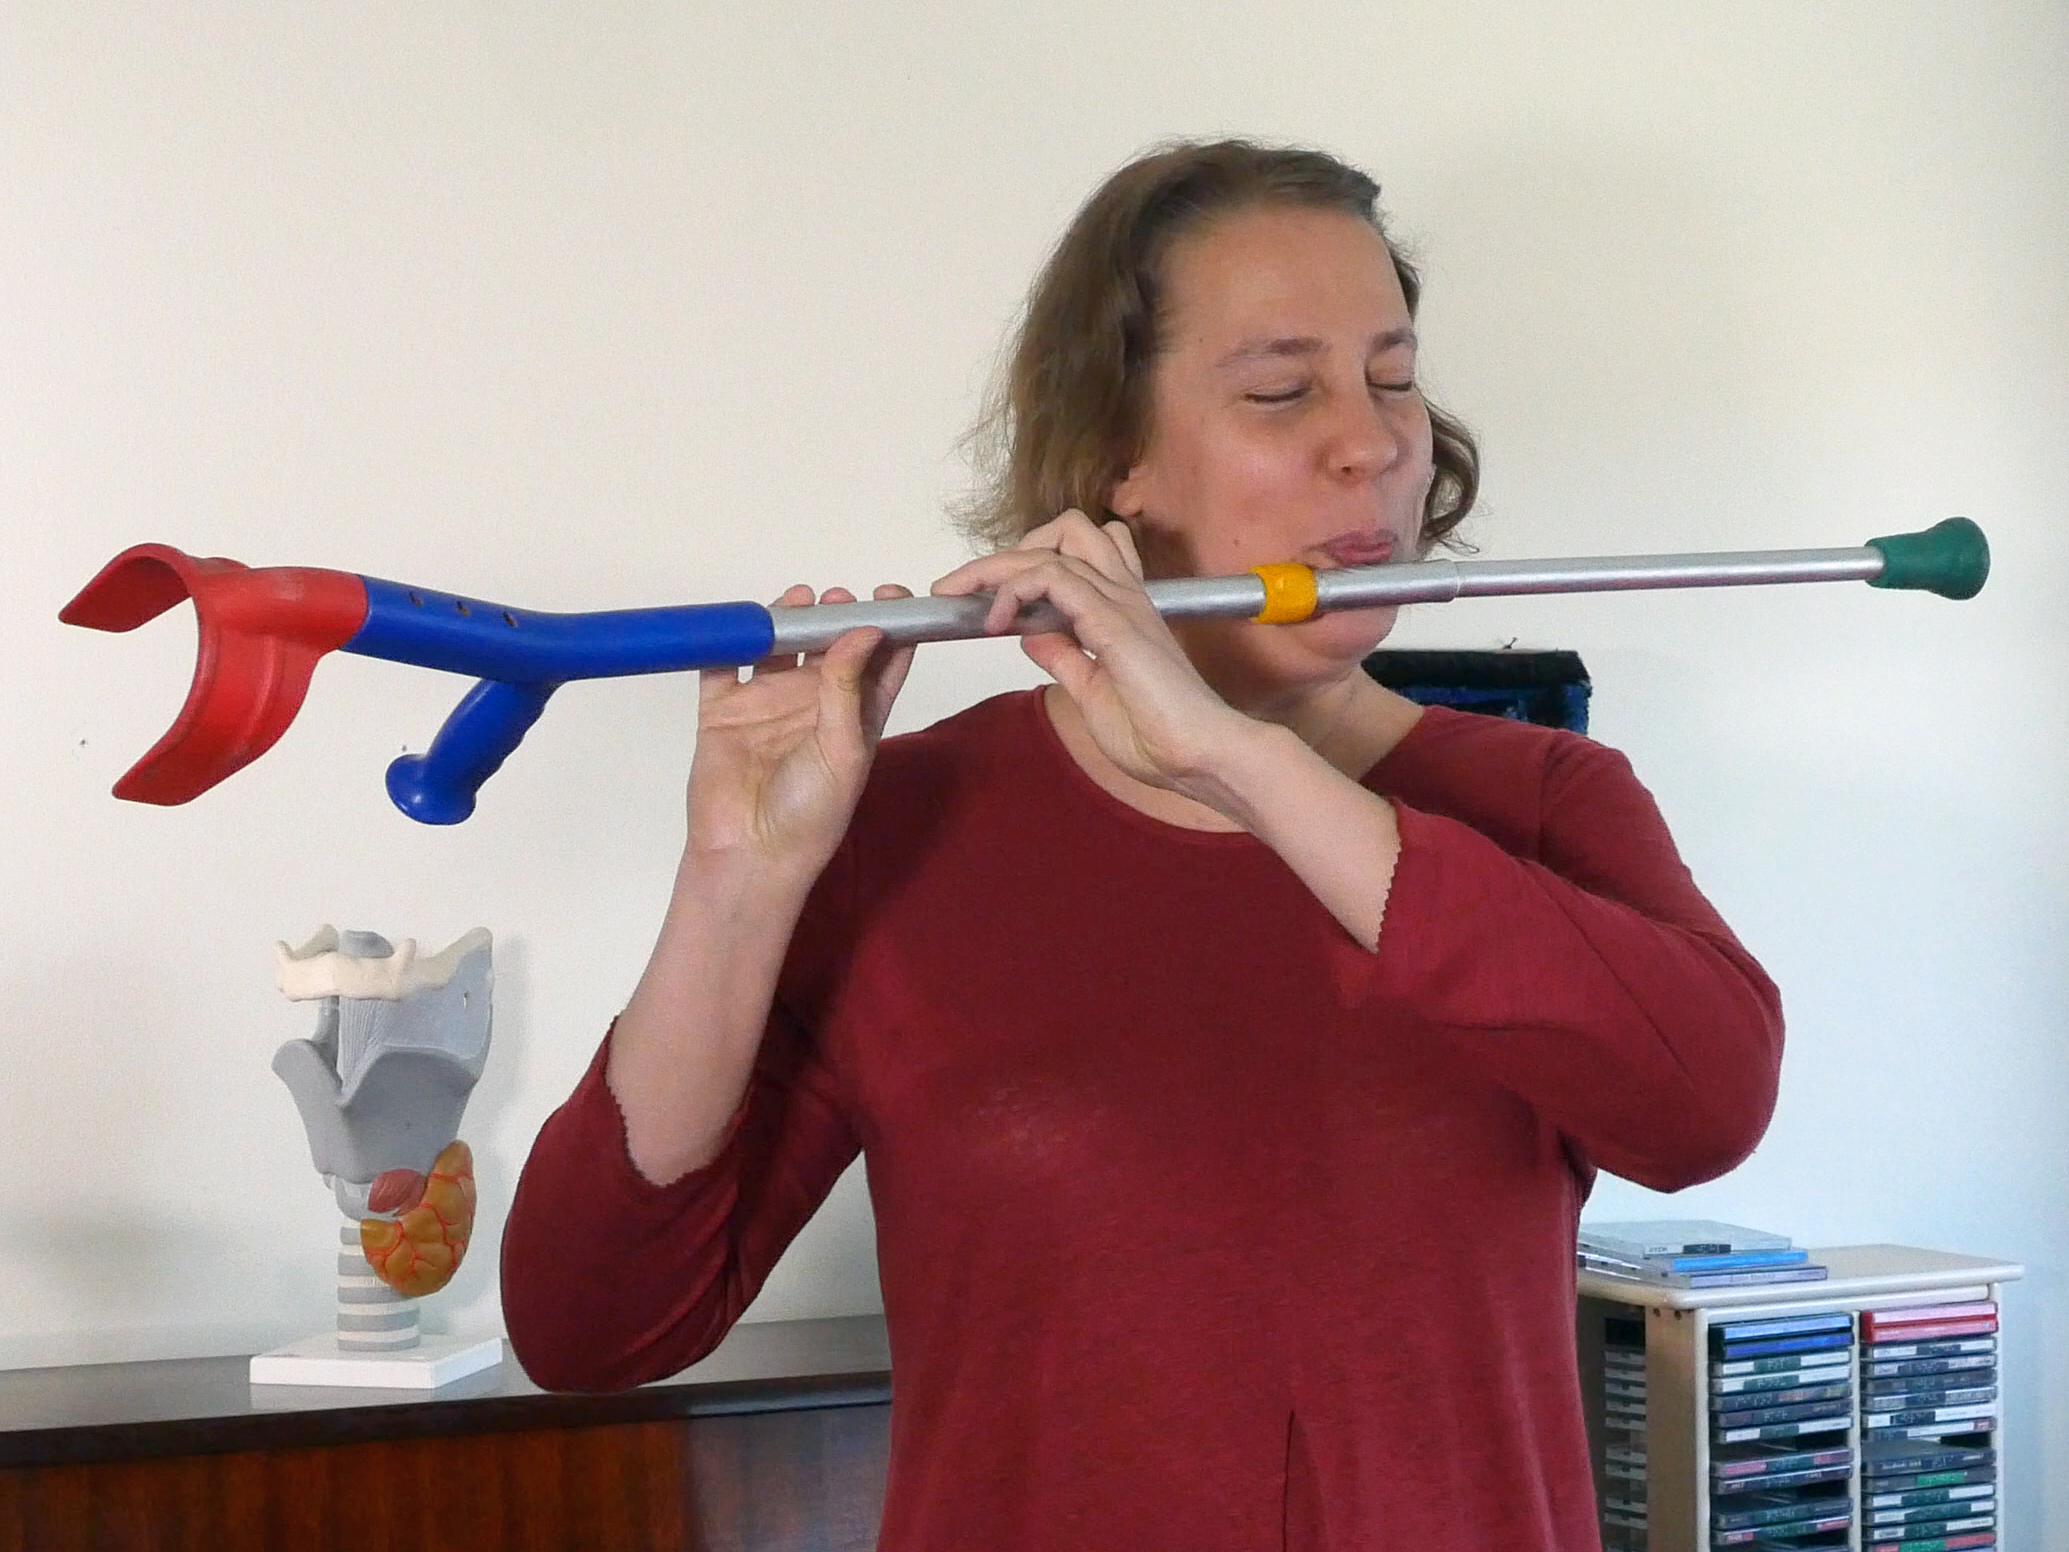 Crutch flute